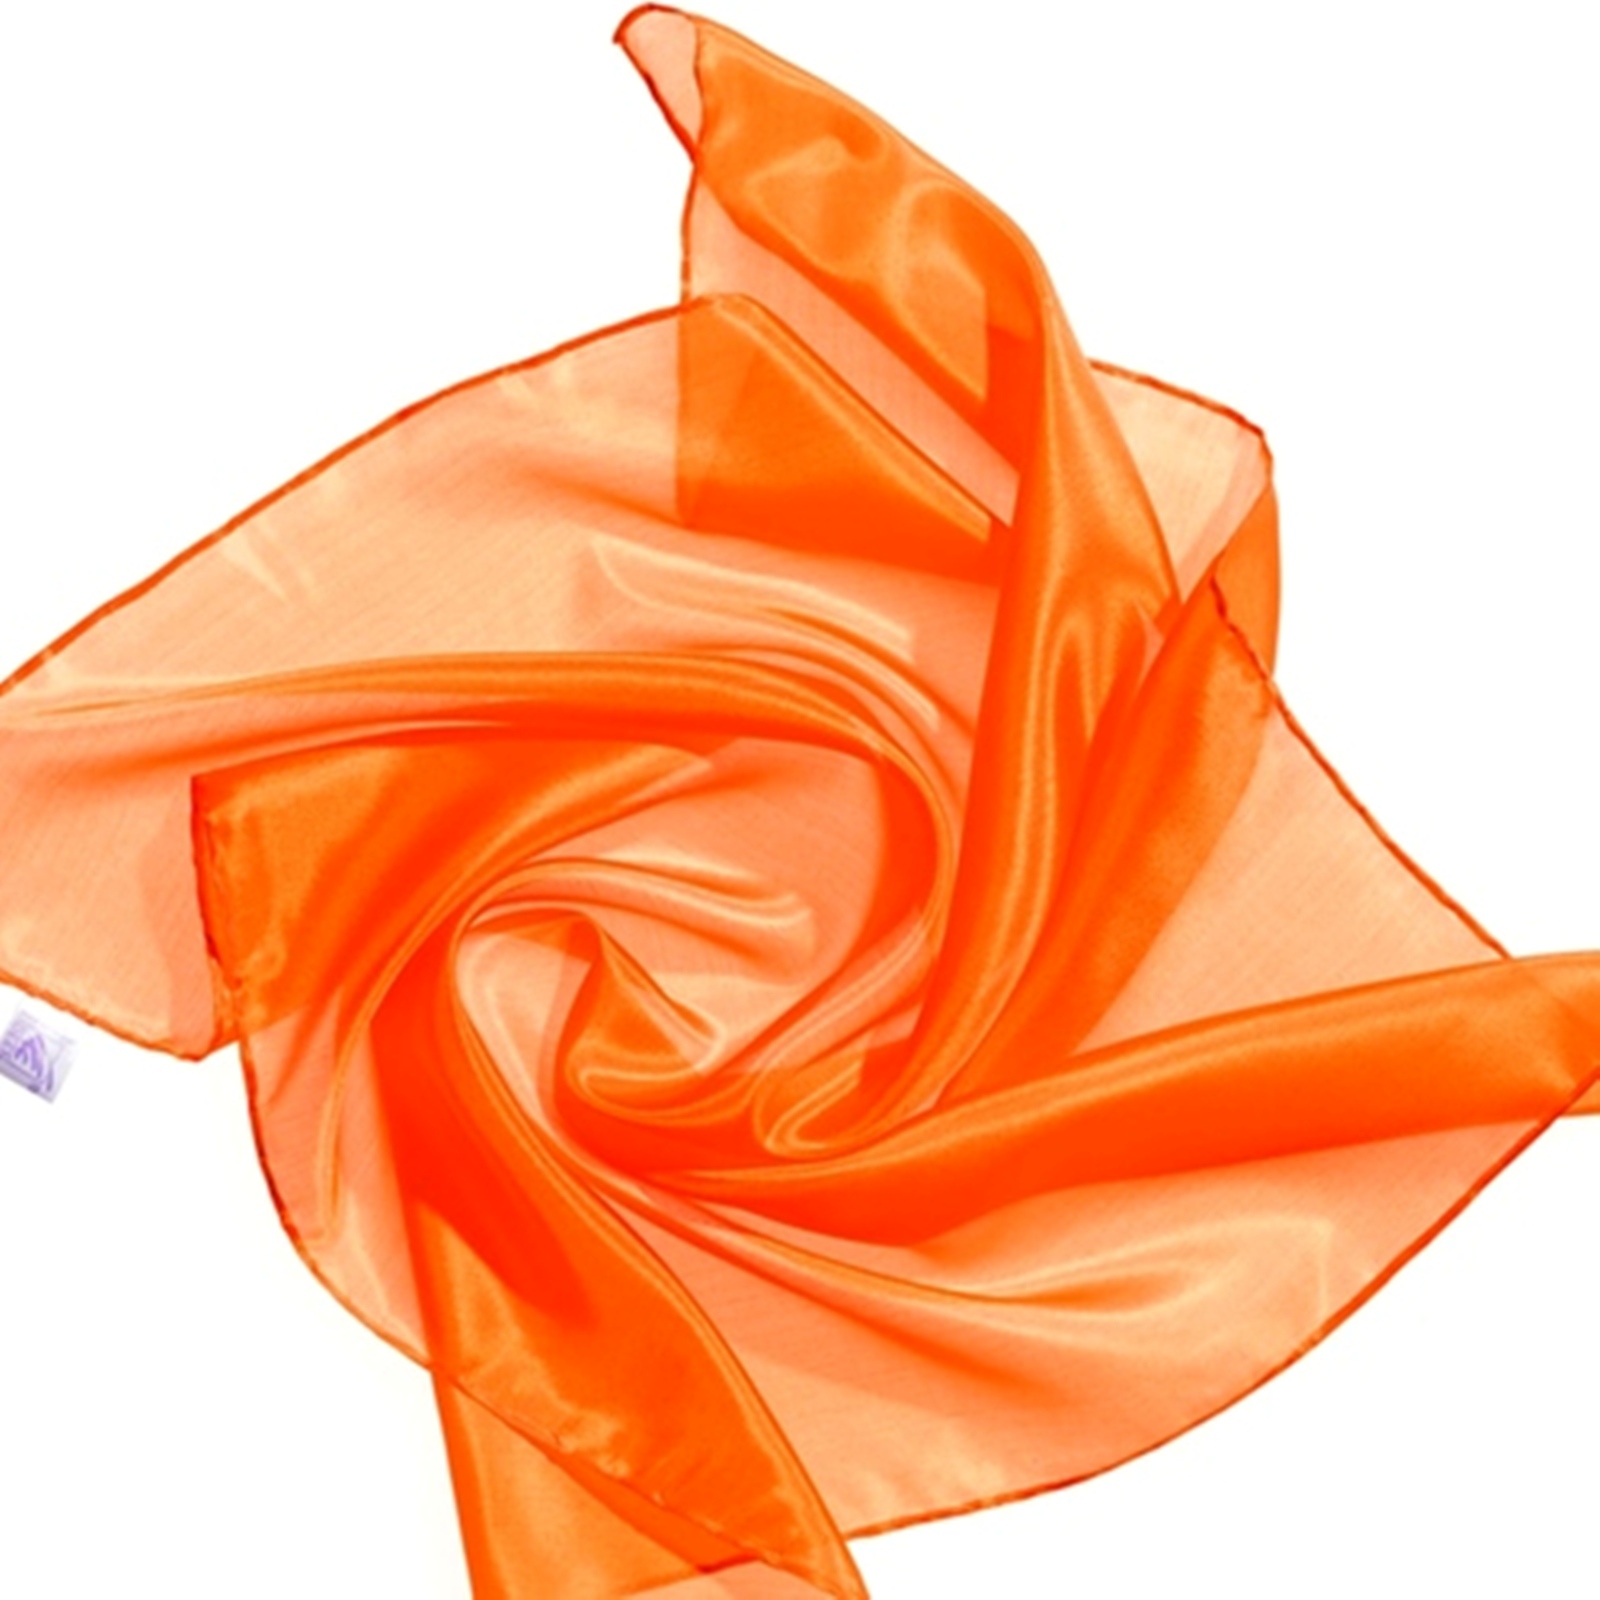 Seidentuch Nickituch 100 % Seide orange 55 x 55 cm